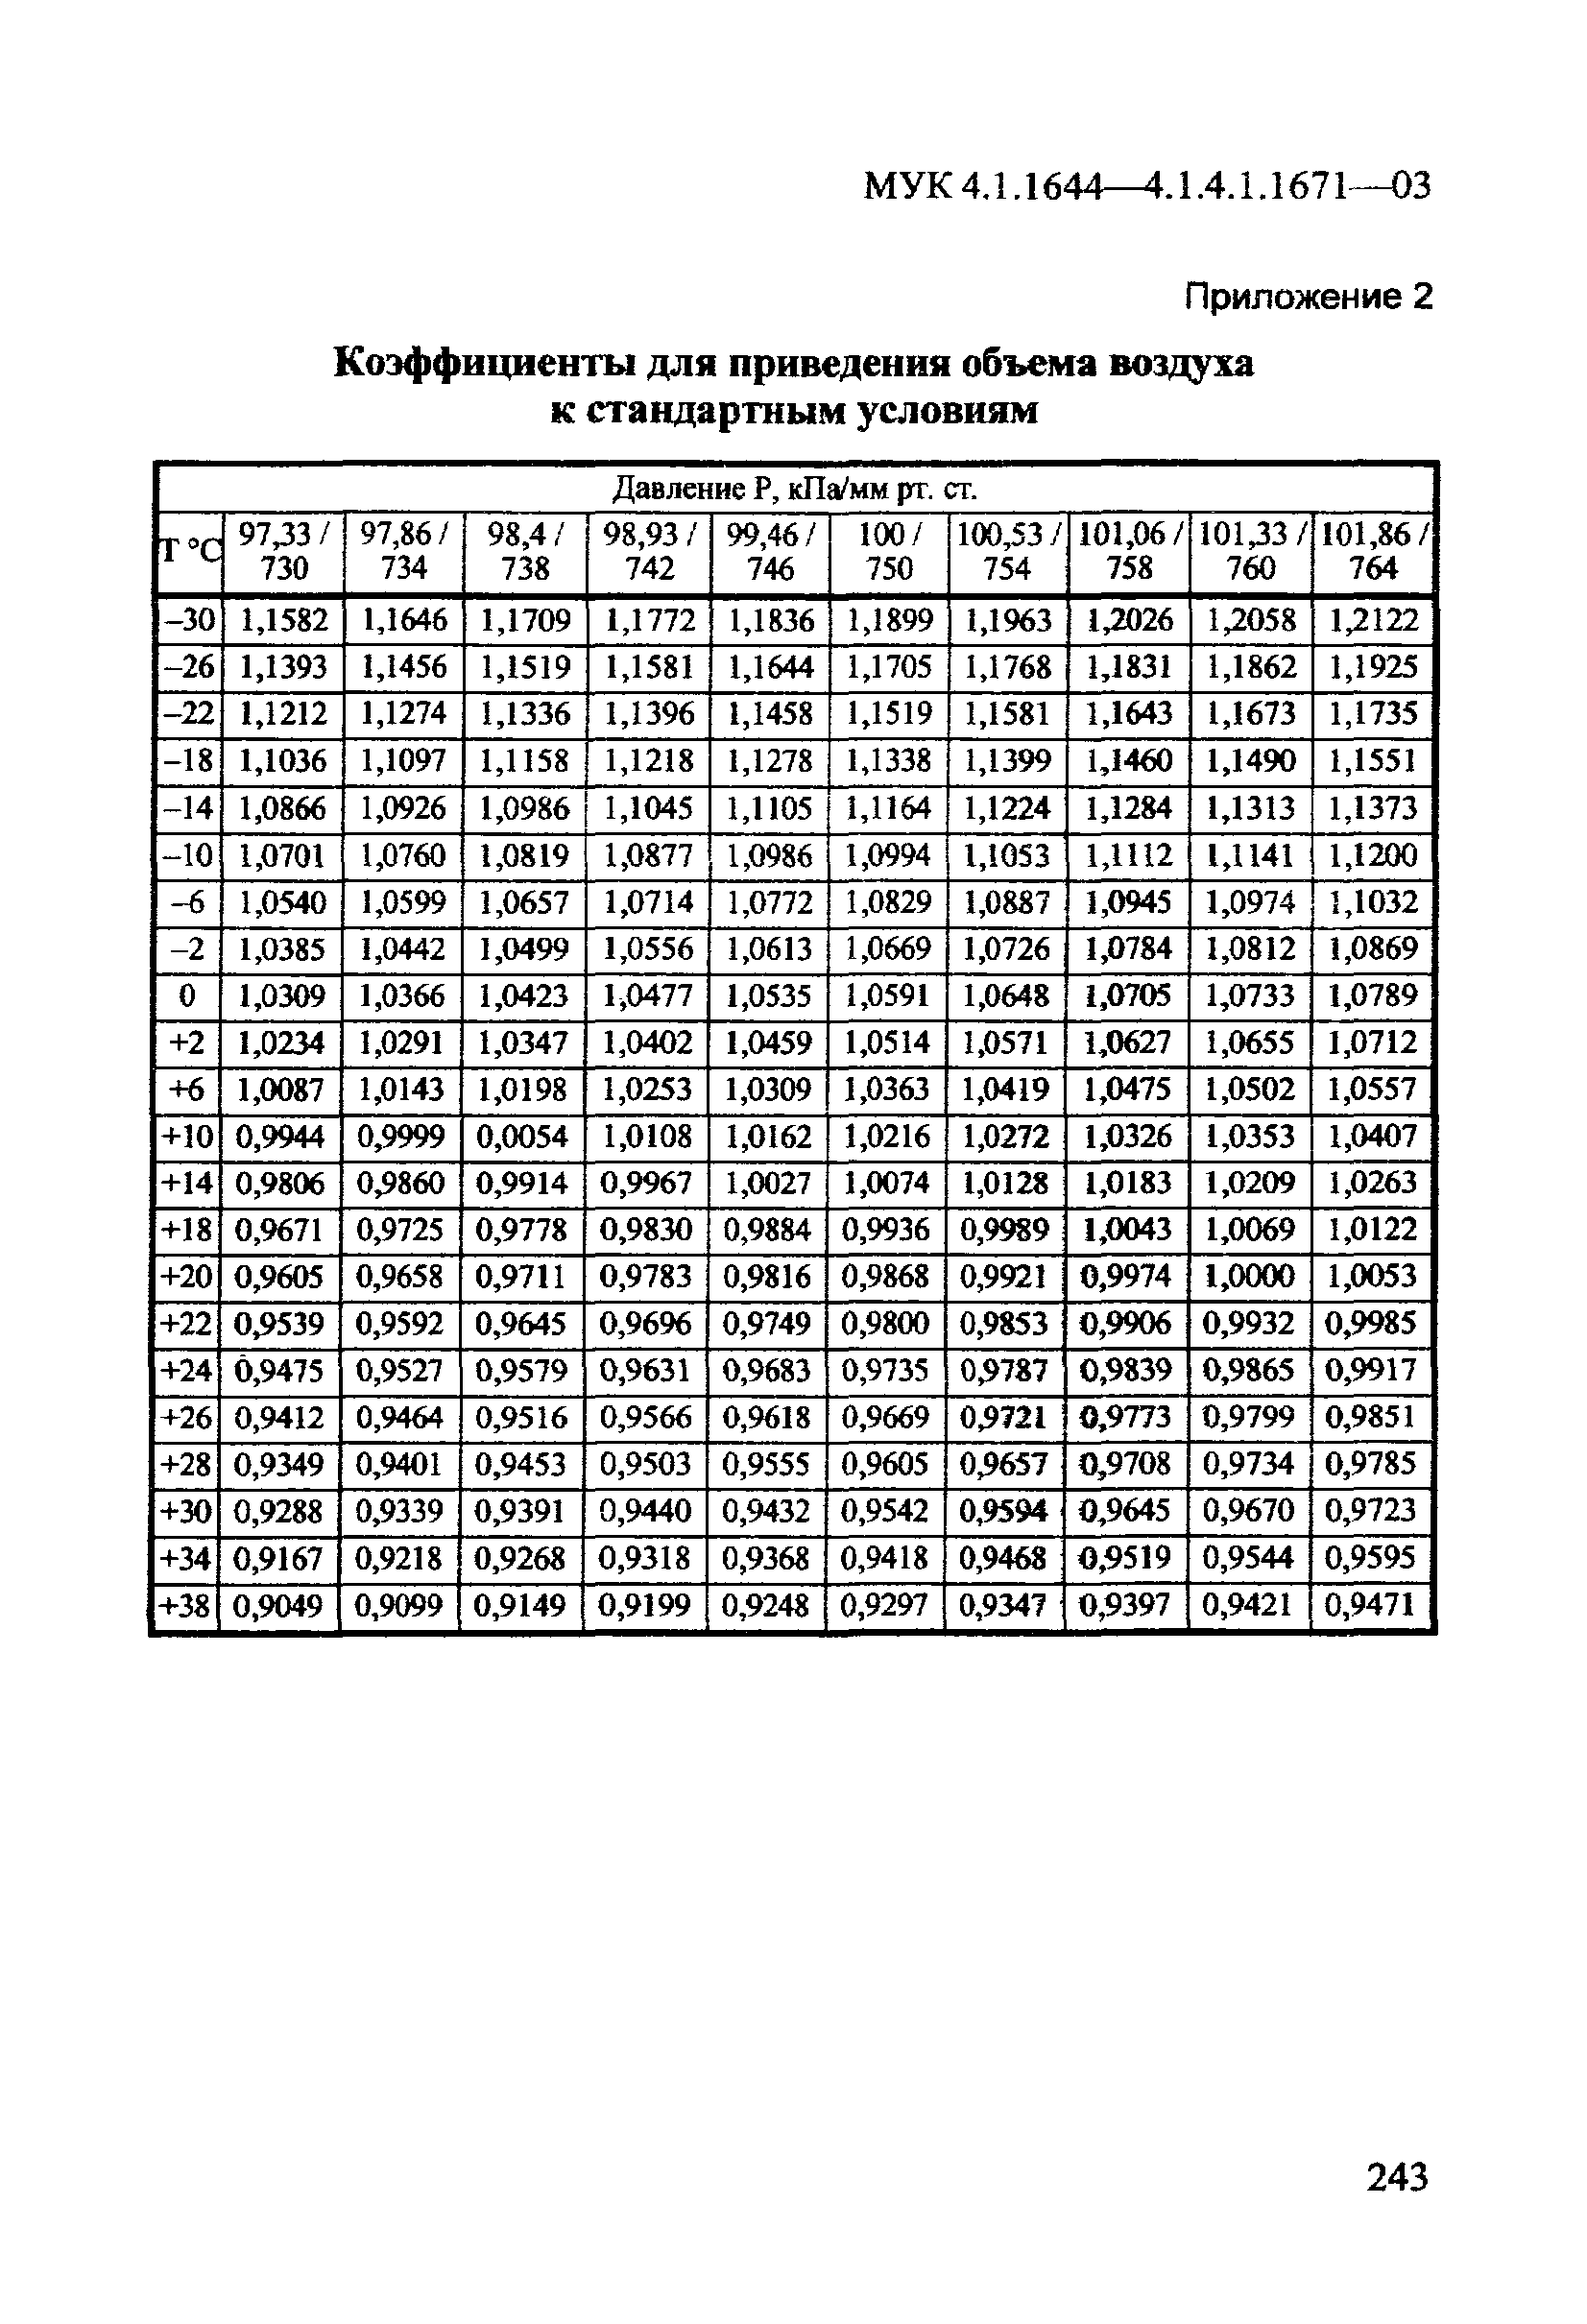 МУК 4.1.1670-03